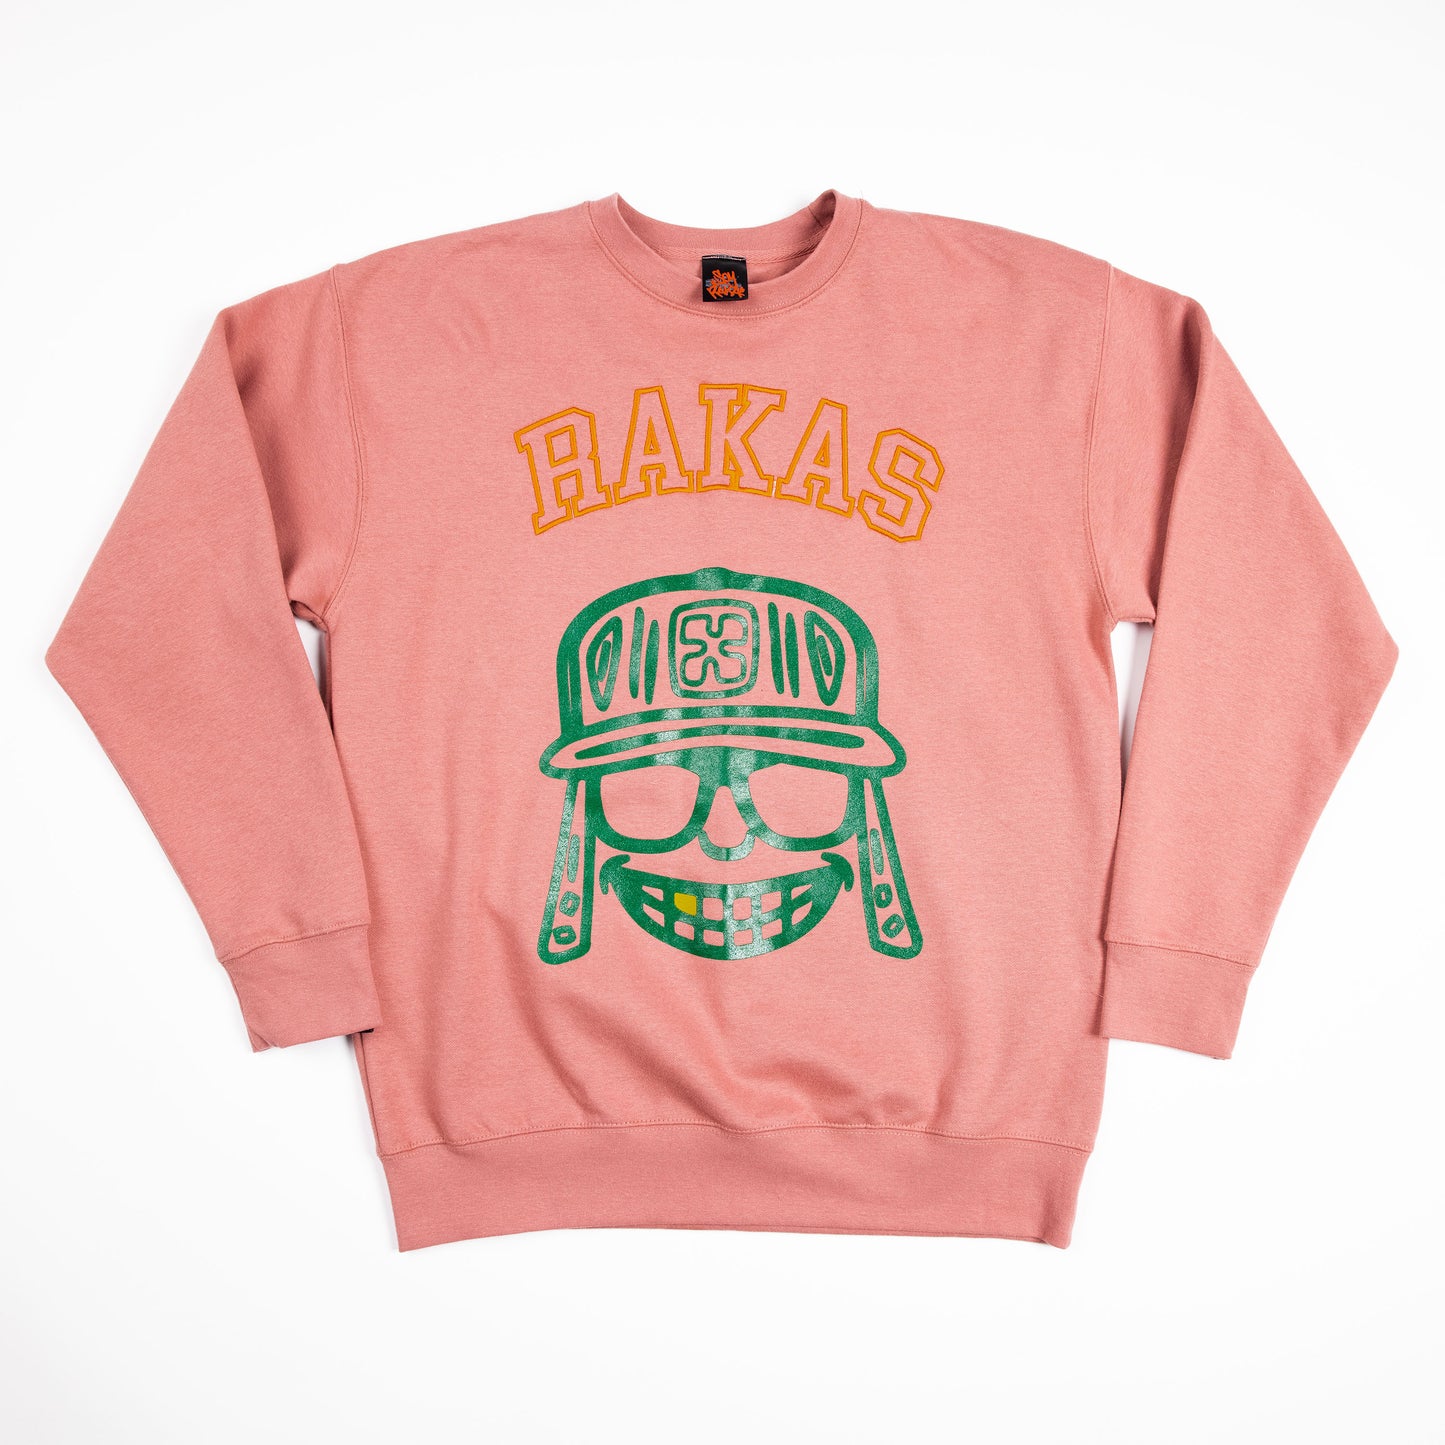 Rakas Salmon exclusive Sweater